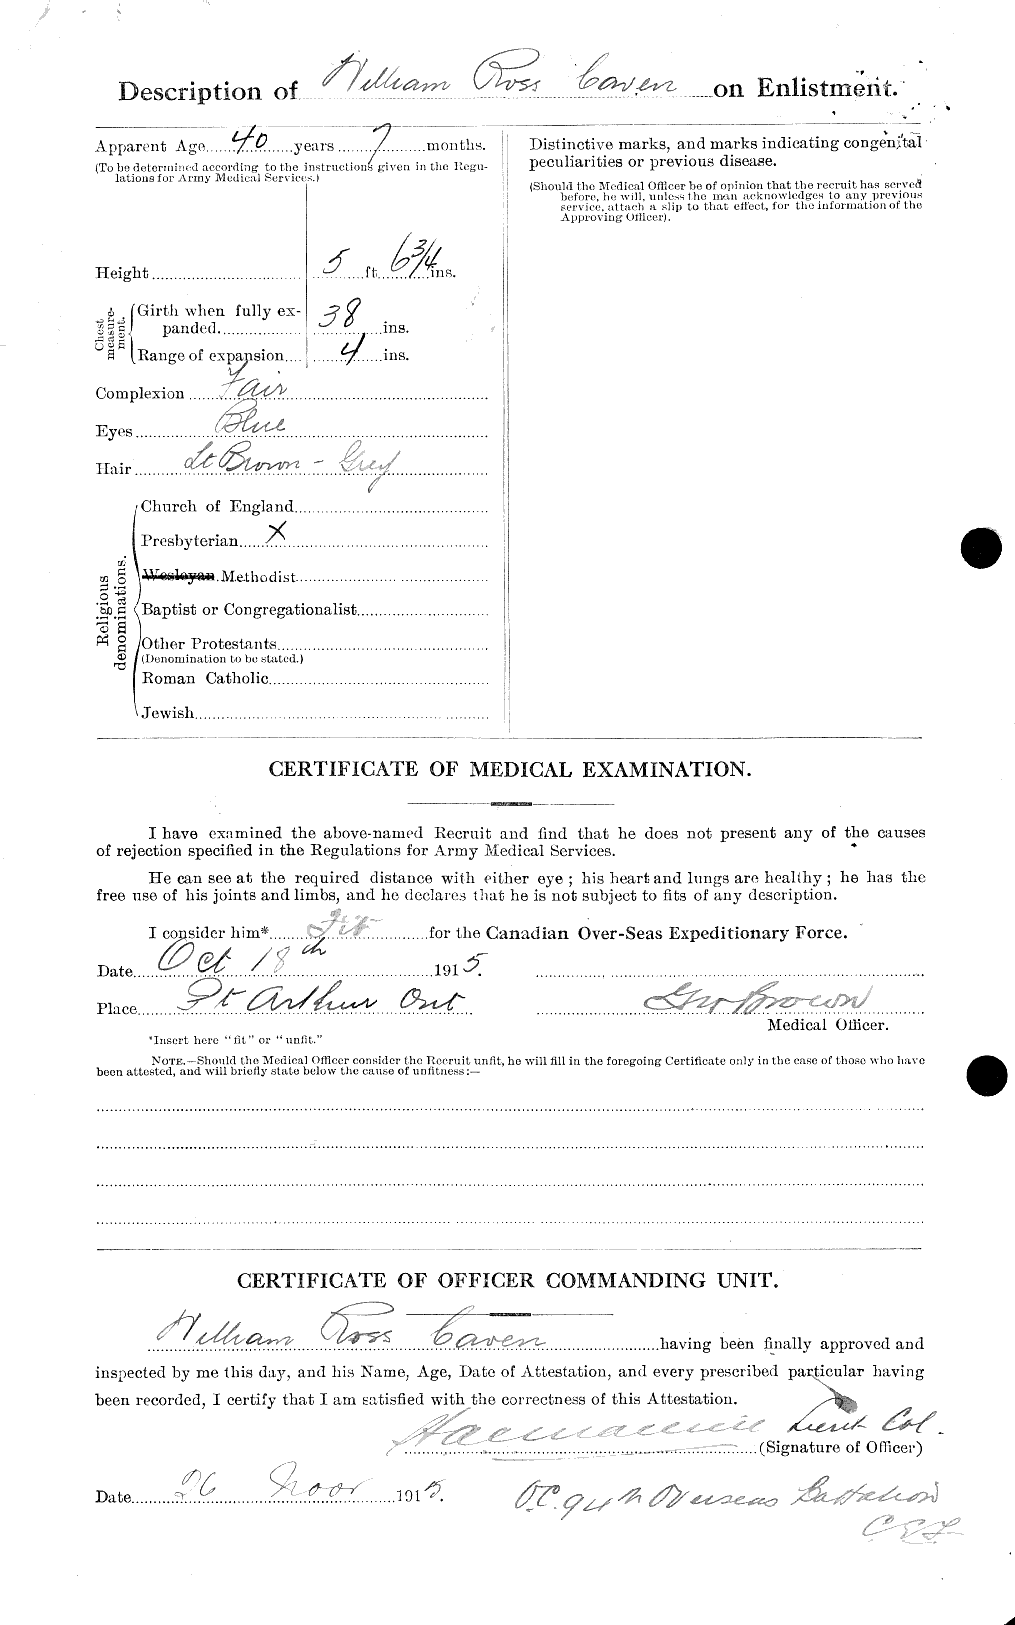 Dossiers du Personnel de la Première Guerre mondiale - CEC 013438b